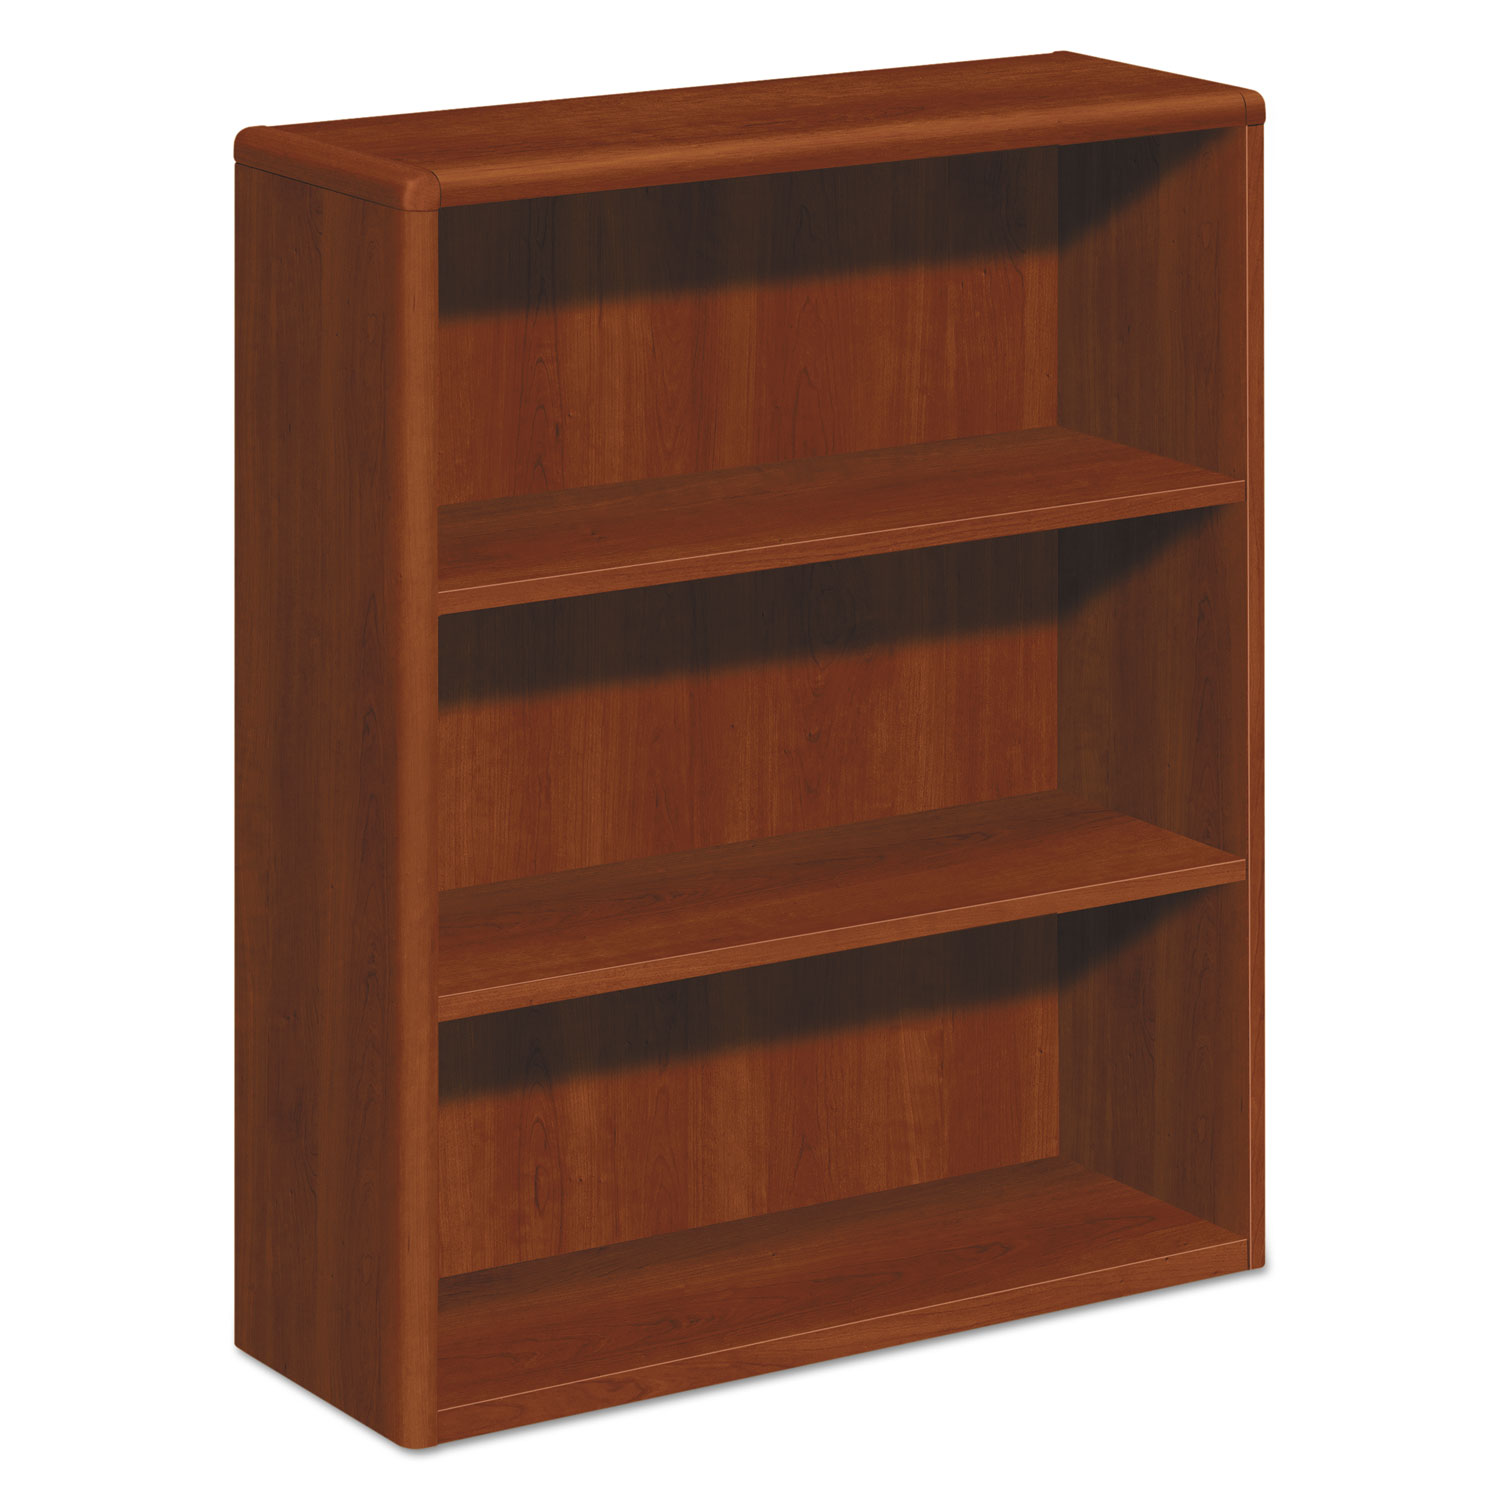  HON H10753.COGNCOGN 10700 Series Wood Bookcase, Three Shelf, 36w x 13 1/8d x 43 3/8h, Cognac (HON10753CO) 